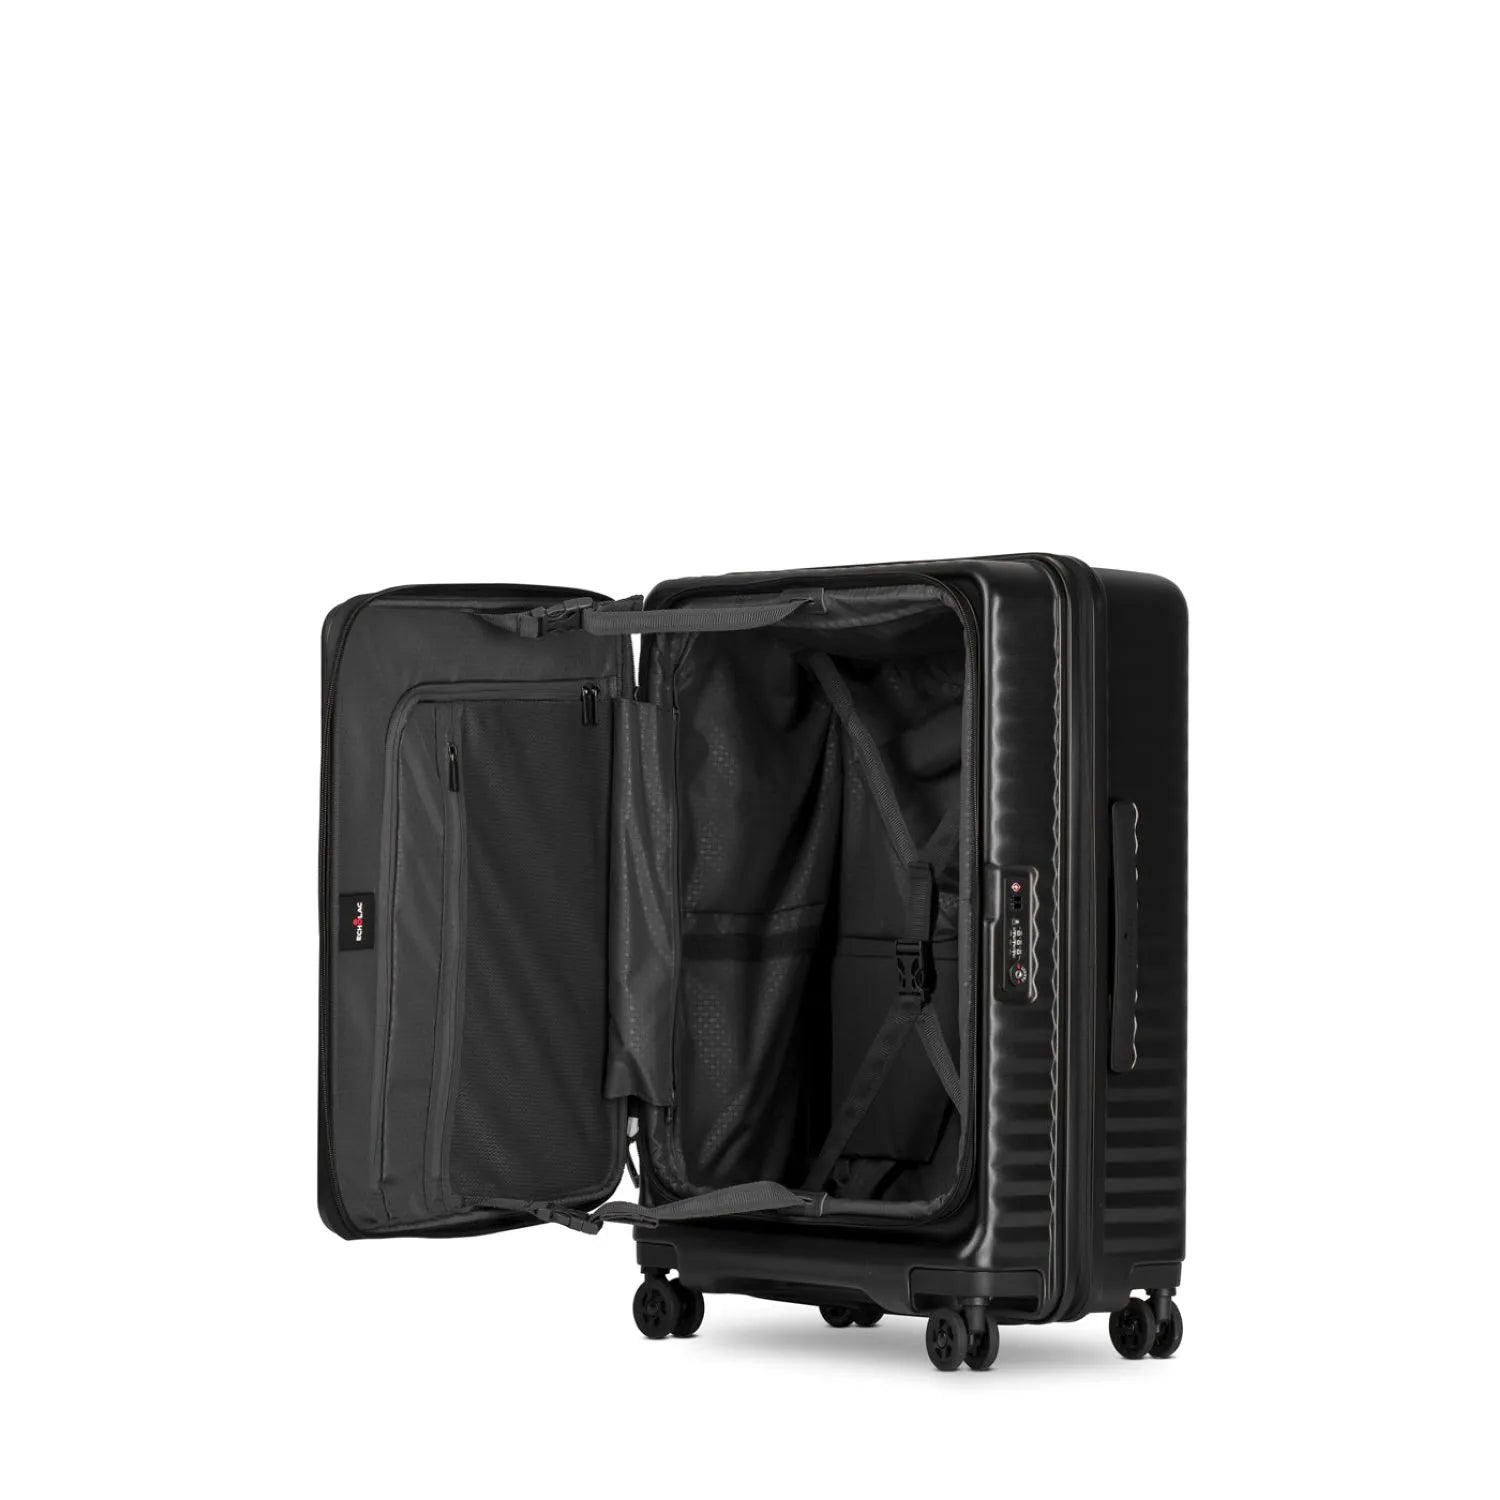 عربة حقائب تسجيل الوصول ايكولاك سيليسترا 24 بوصة اسود - PC183 اسود 24